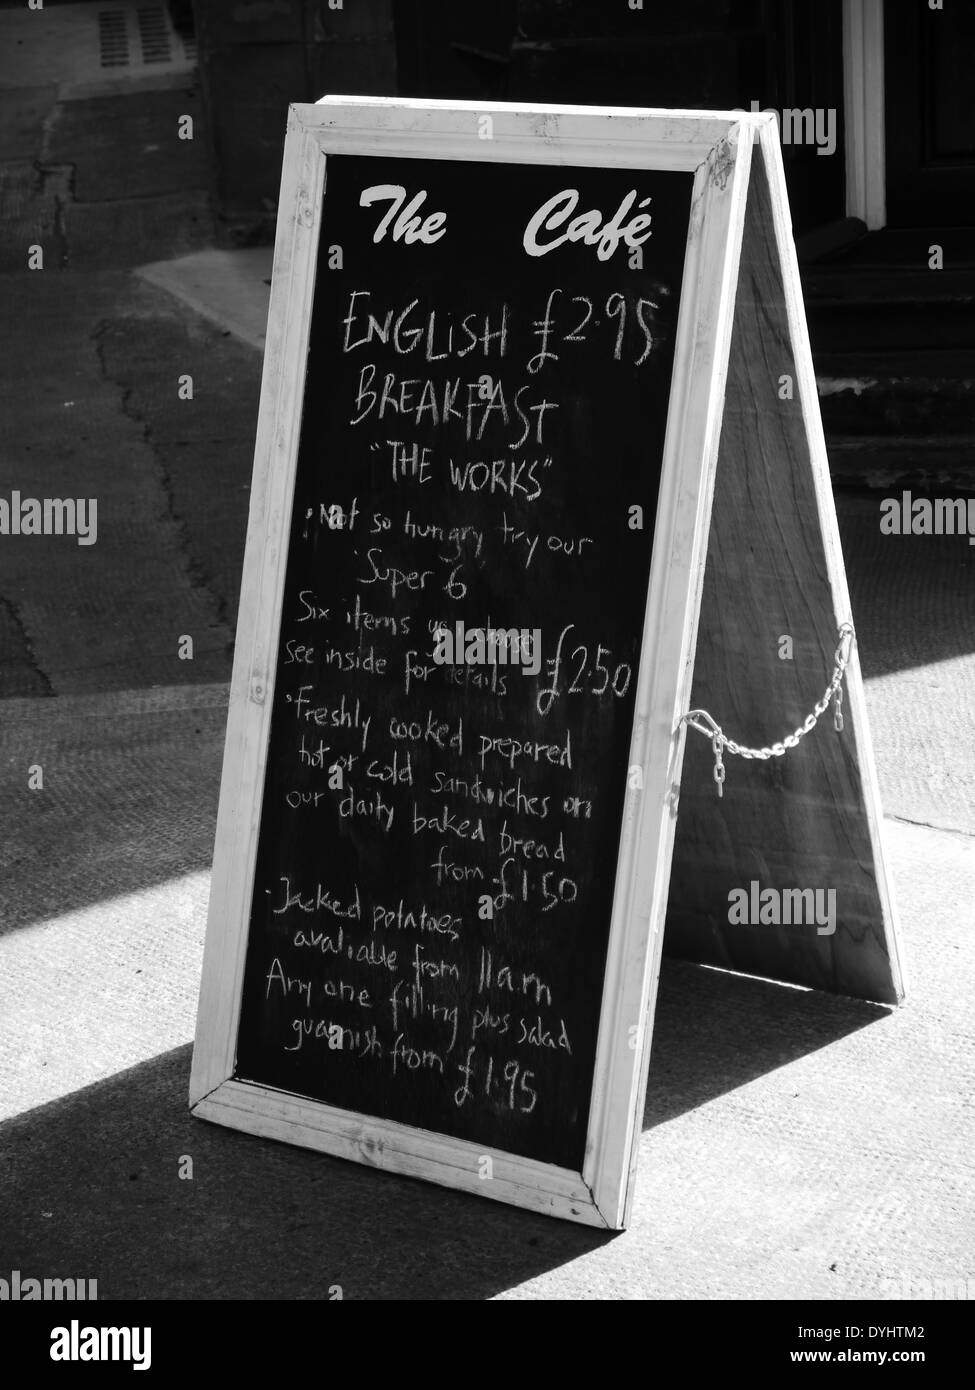 Scheda sandwich / chalk menu della colazione firmare al di fuori del Café, Queen Street, Quayside, Newcastle upon Tyne, Regno Unito. Monocromatico Foto Stock